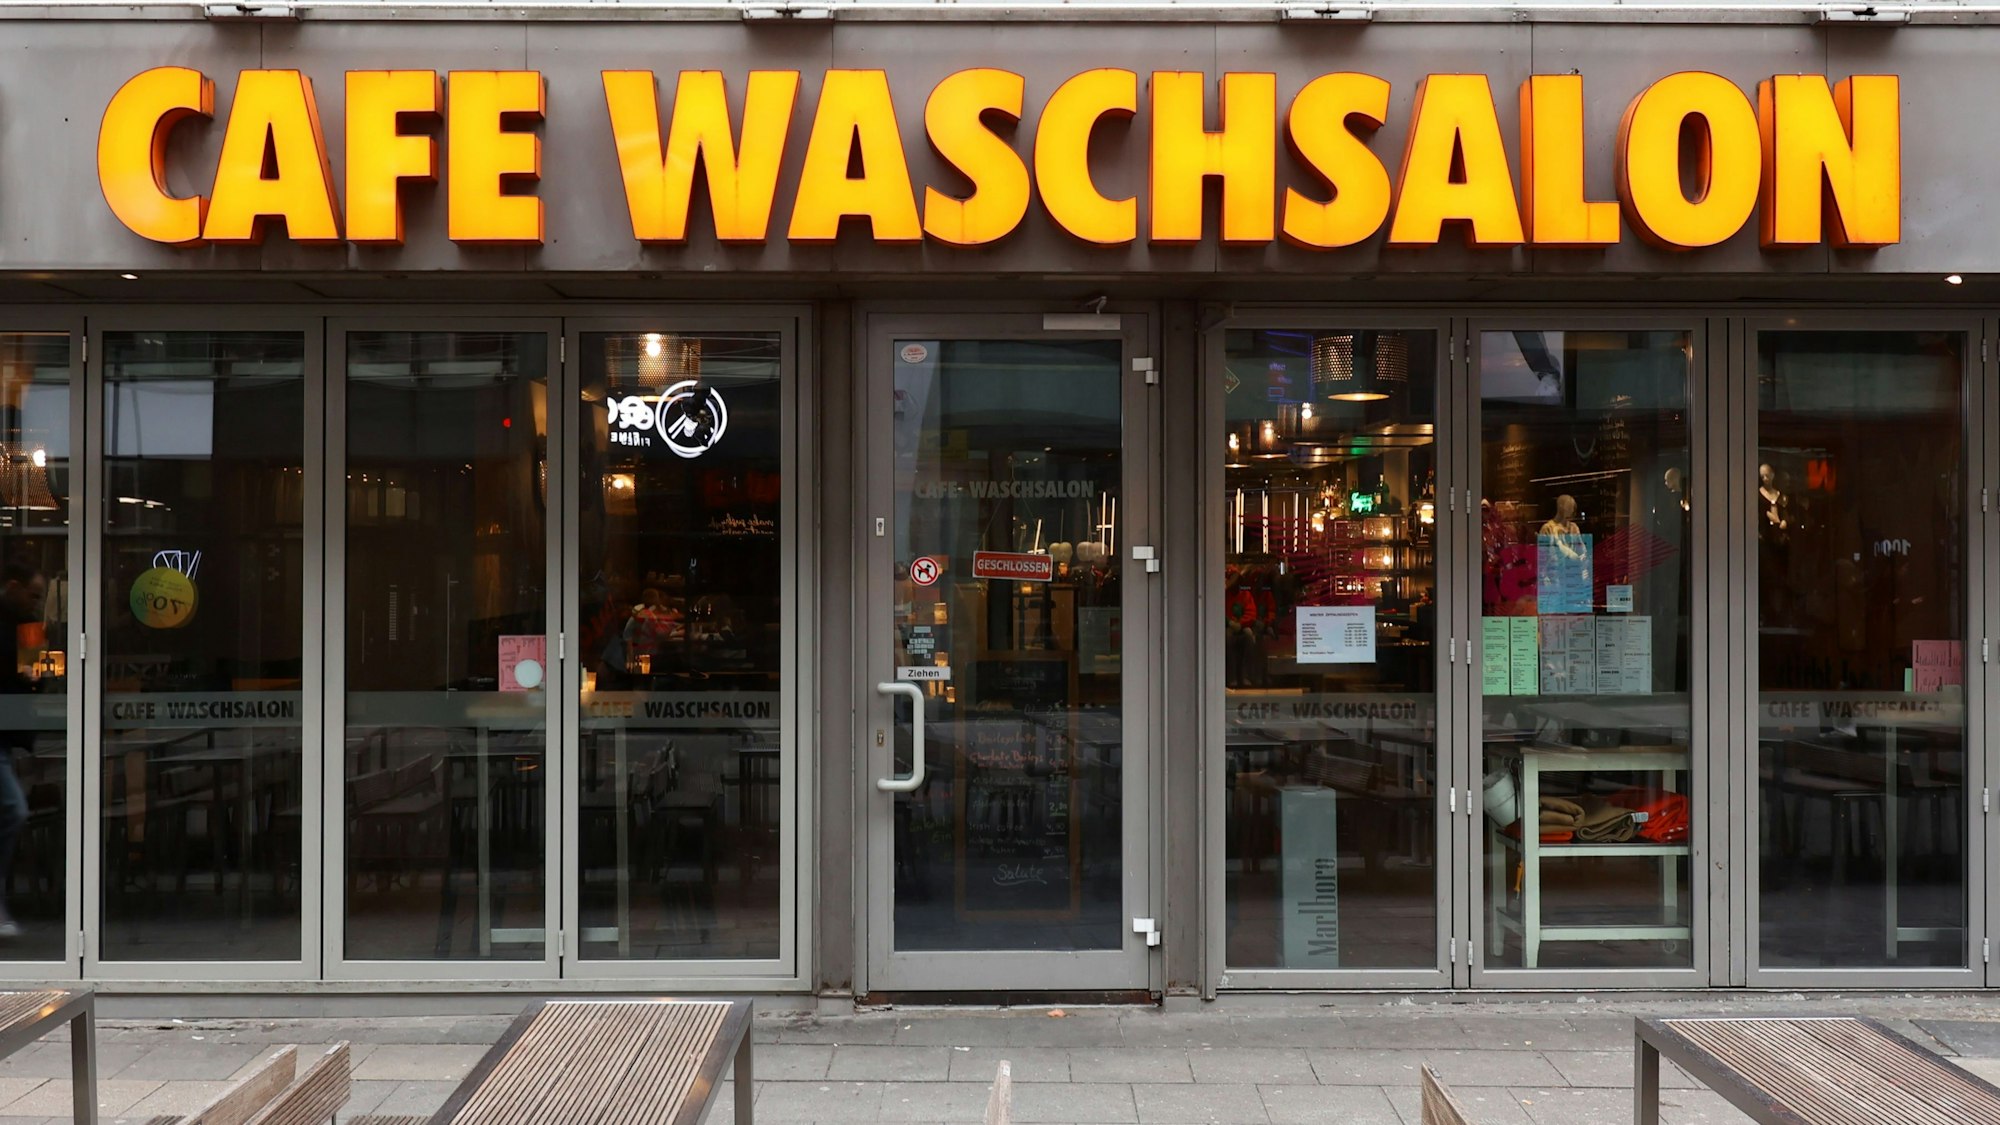 Das Café Waschsalon wird im Februar 30 Jahre alt, Zeit für einen Blick in die bewegte Geschichte. 
Ehrenstraße 77
Foto: Martina Goyert

